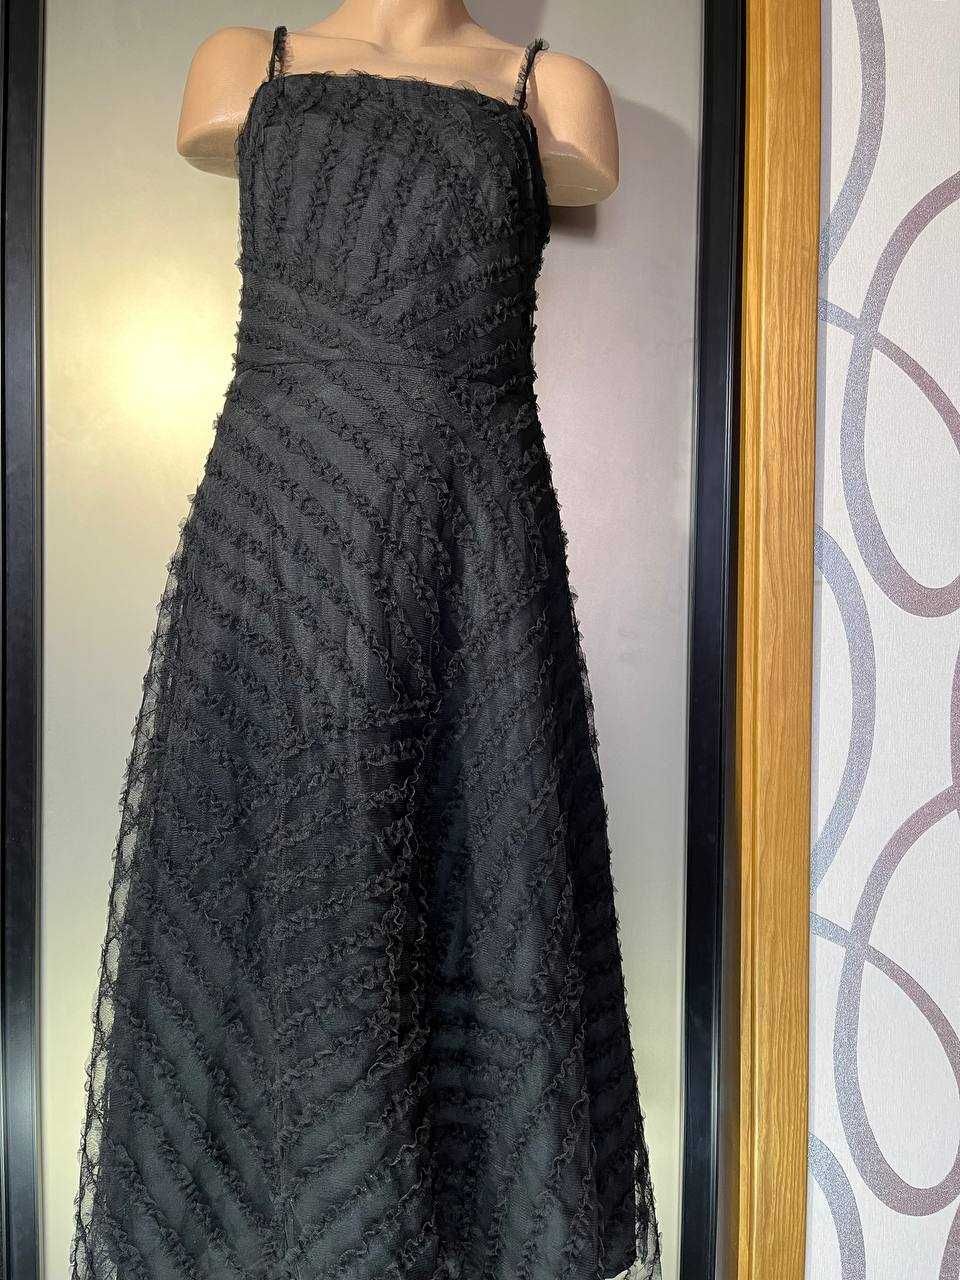 Черное вечернее/коктейльное платье- cетка, кружево.  Размер S-M.